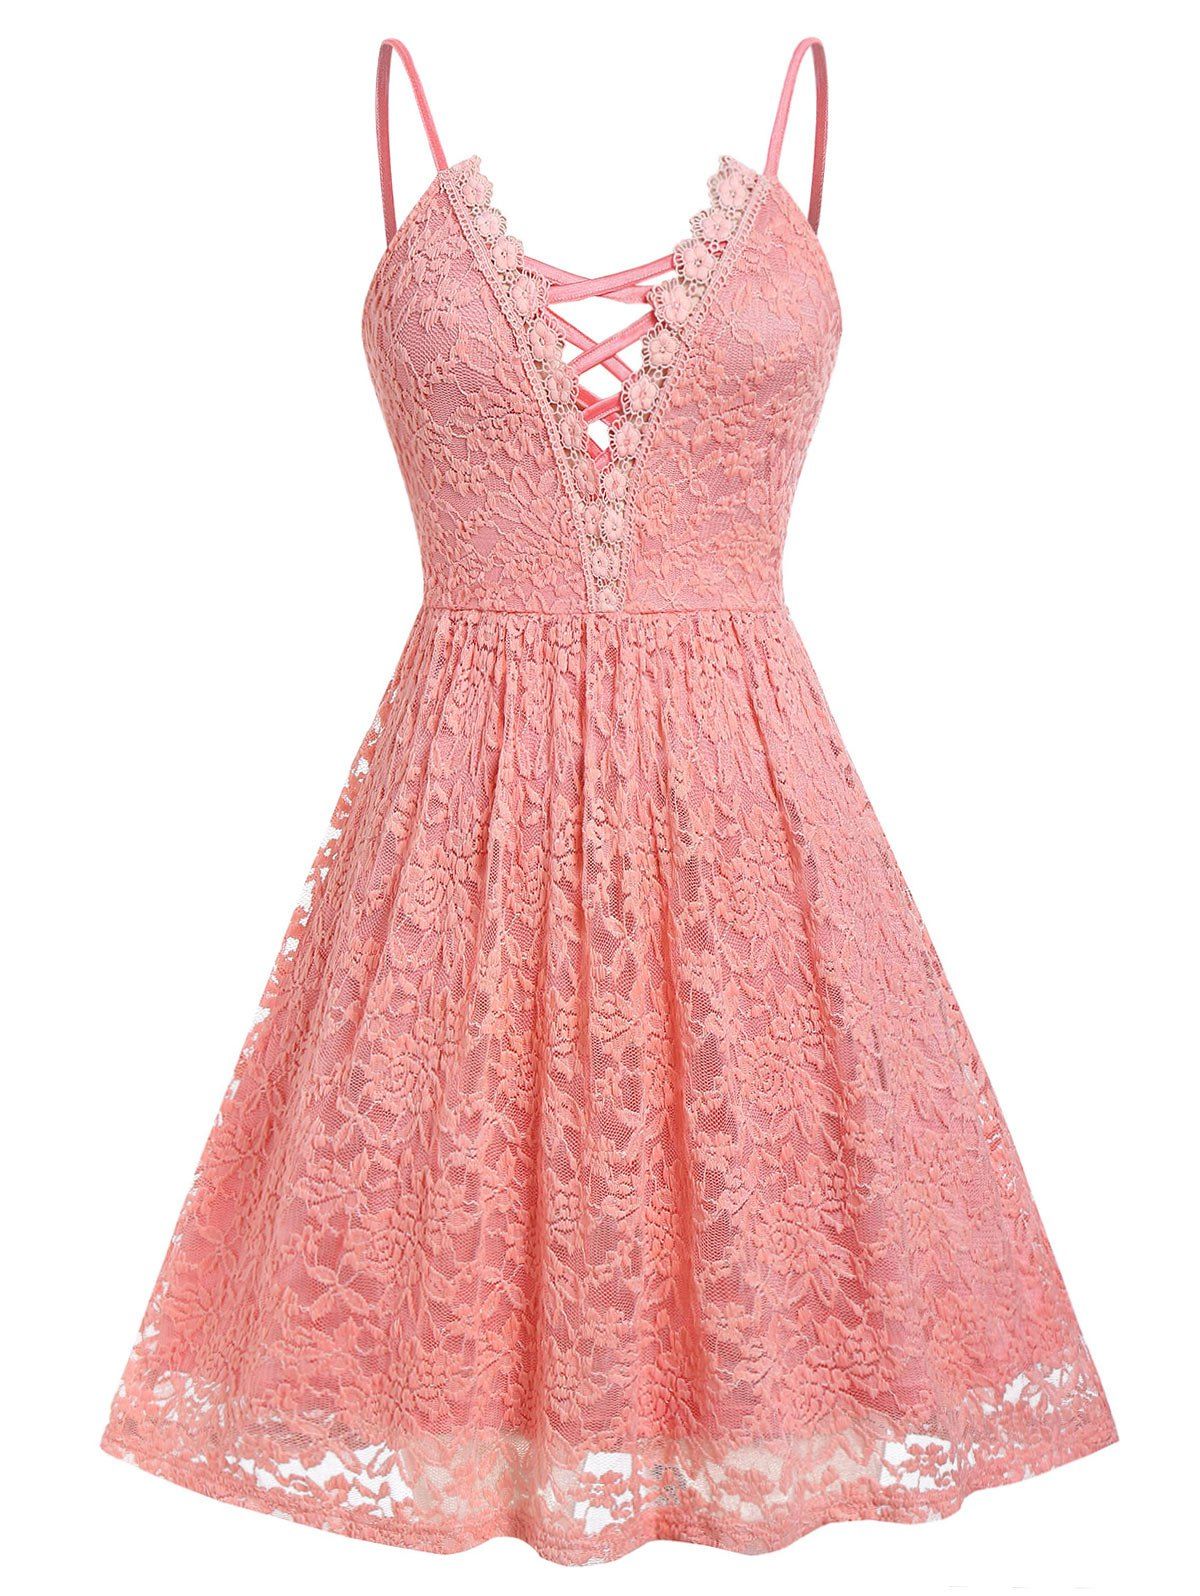 Plus Size Lace Criss Cross Cami Dress - LIGHT CORAL L